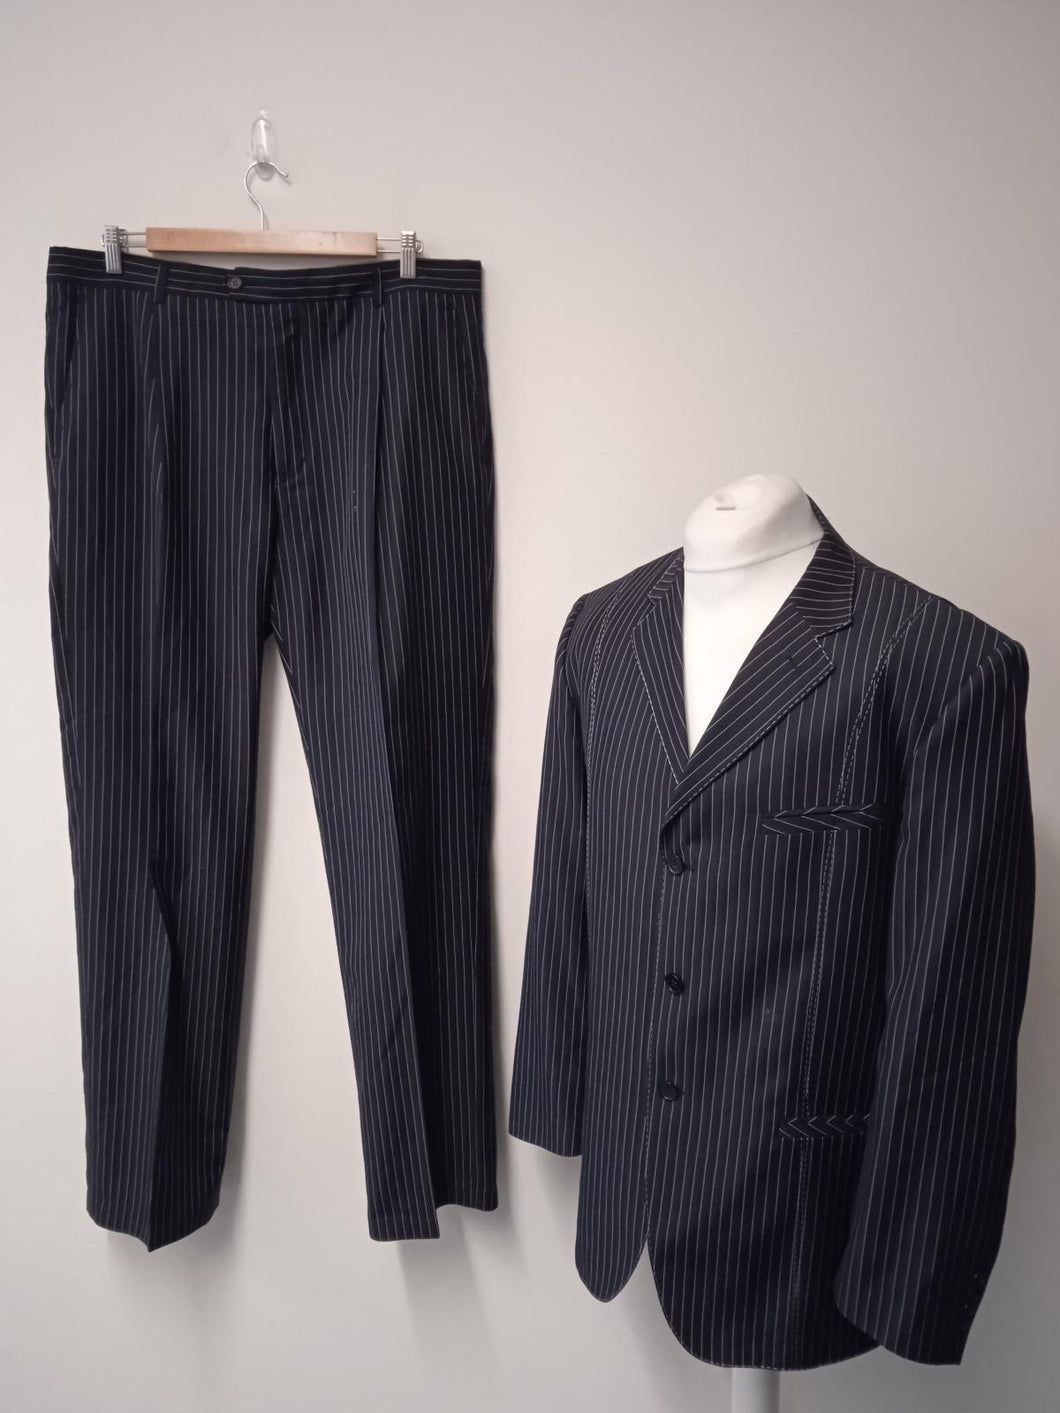 HUGO BOSS Men's Black & White Striped Wool Suit Jacket & Trousers IT54 UK44